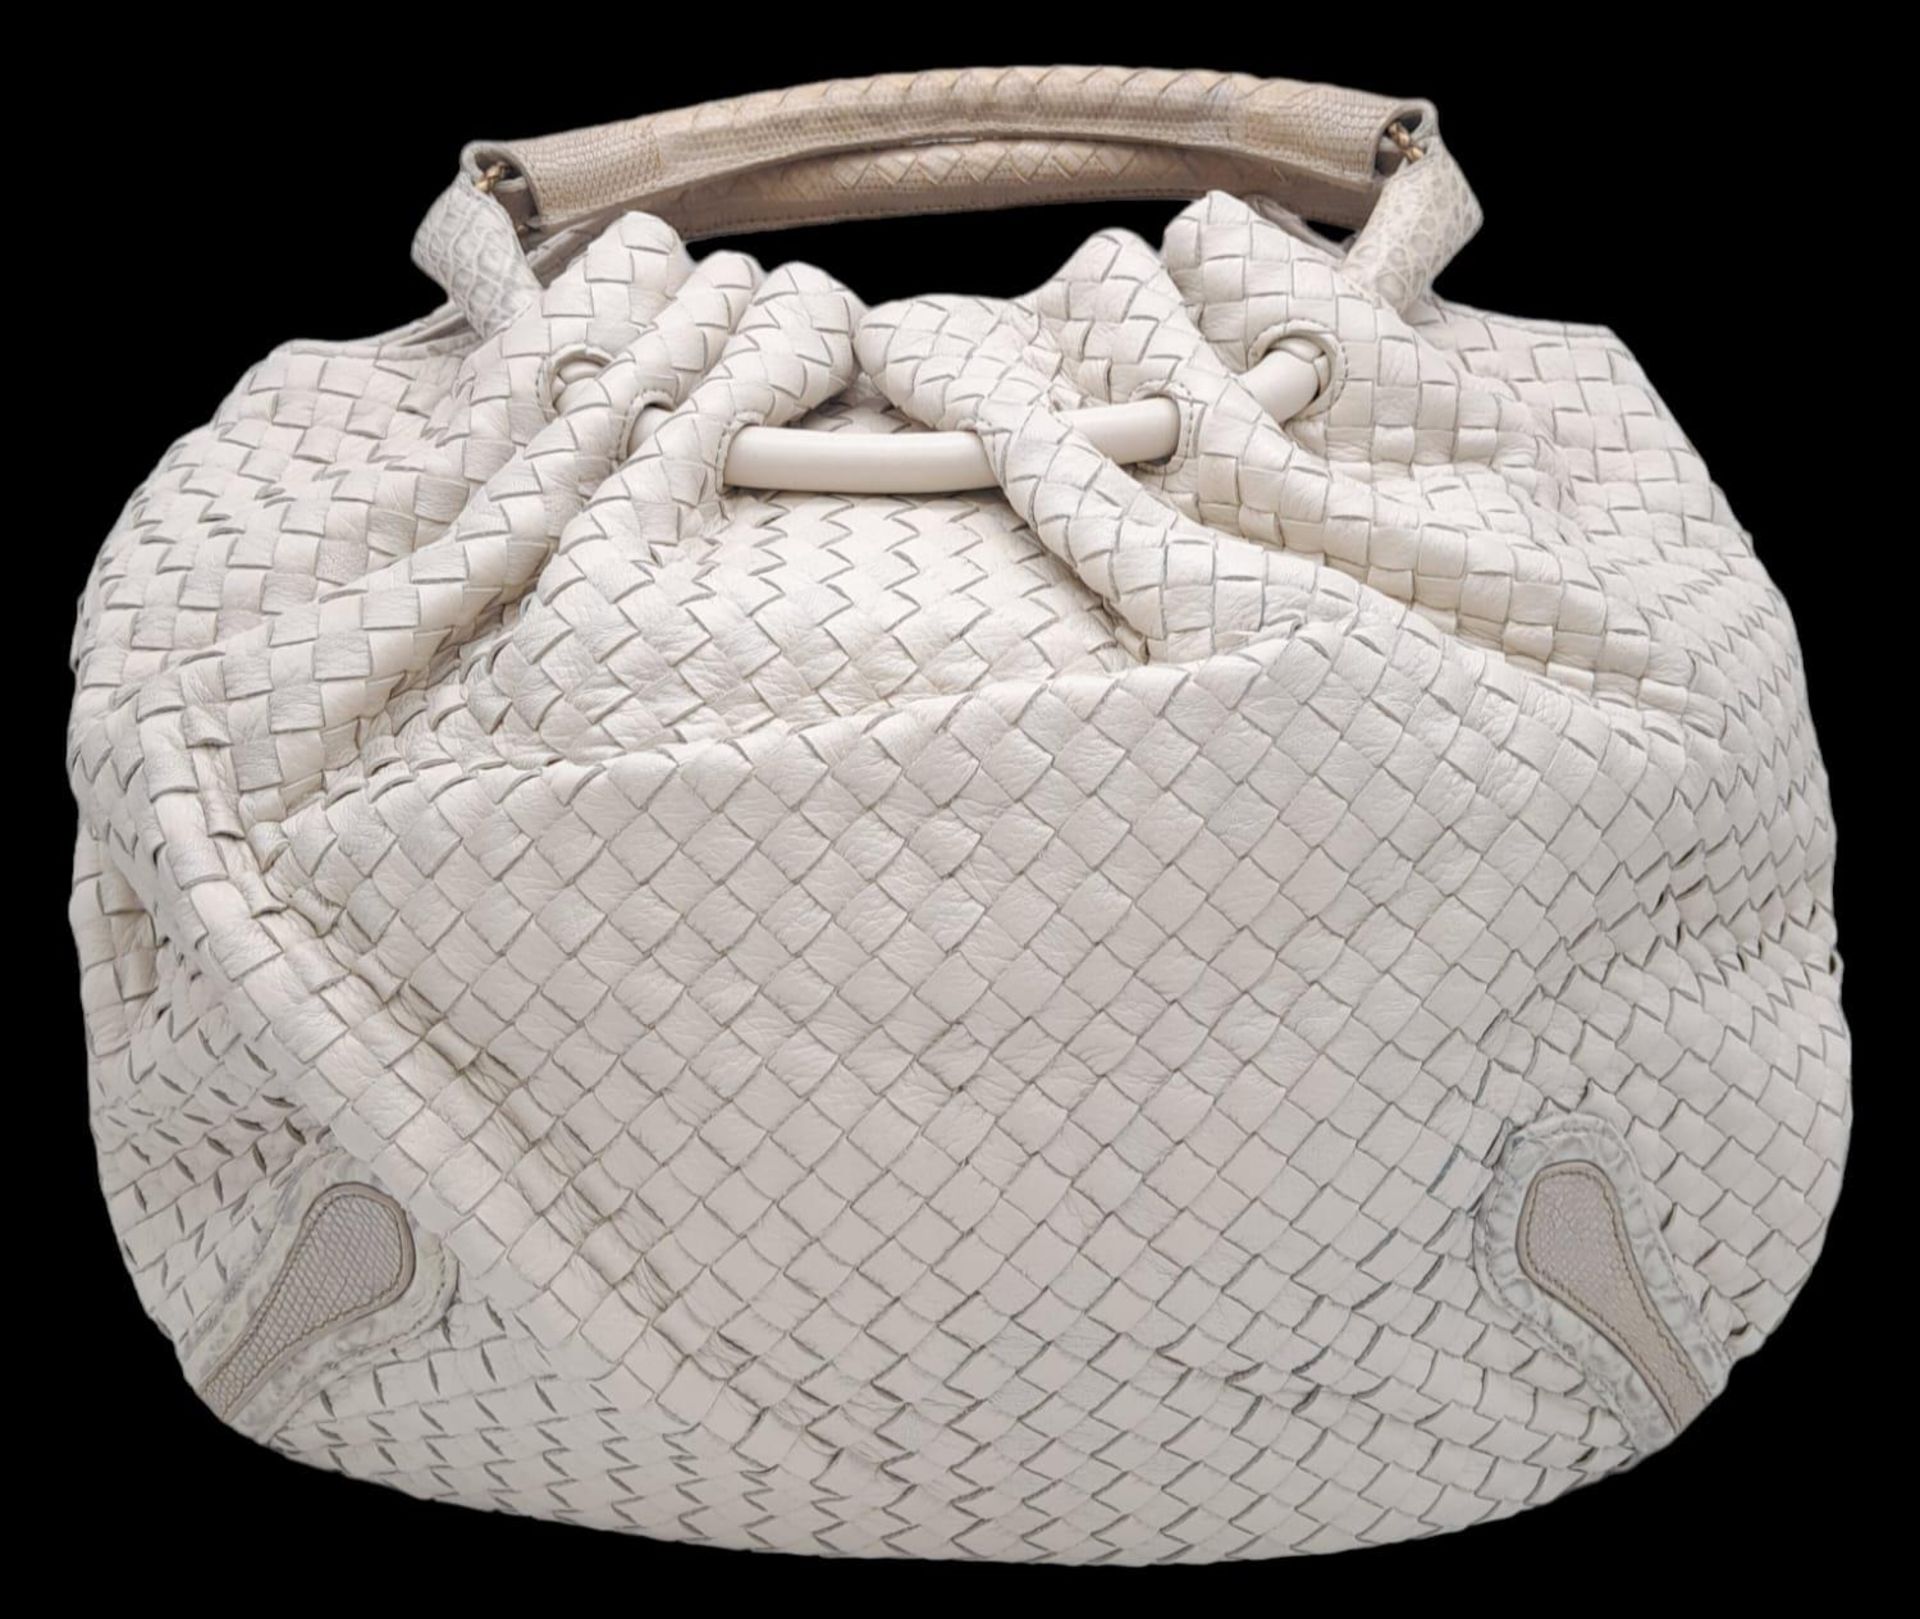 A Bottega Veneta Cream Hobo Bag. Intracciato (woven) leather exterior with reptilian handles and